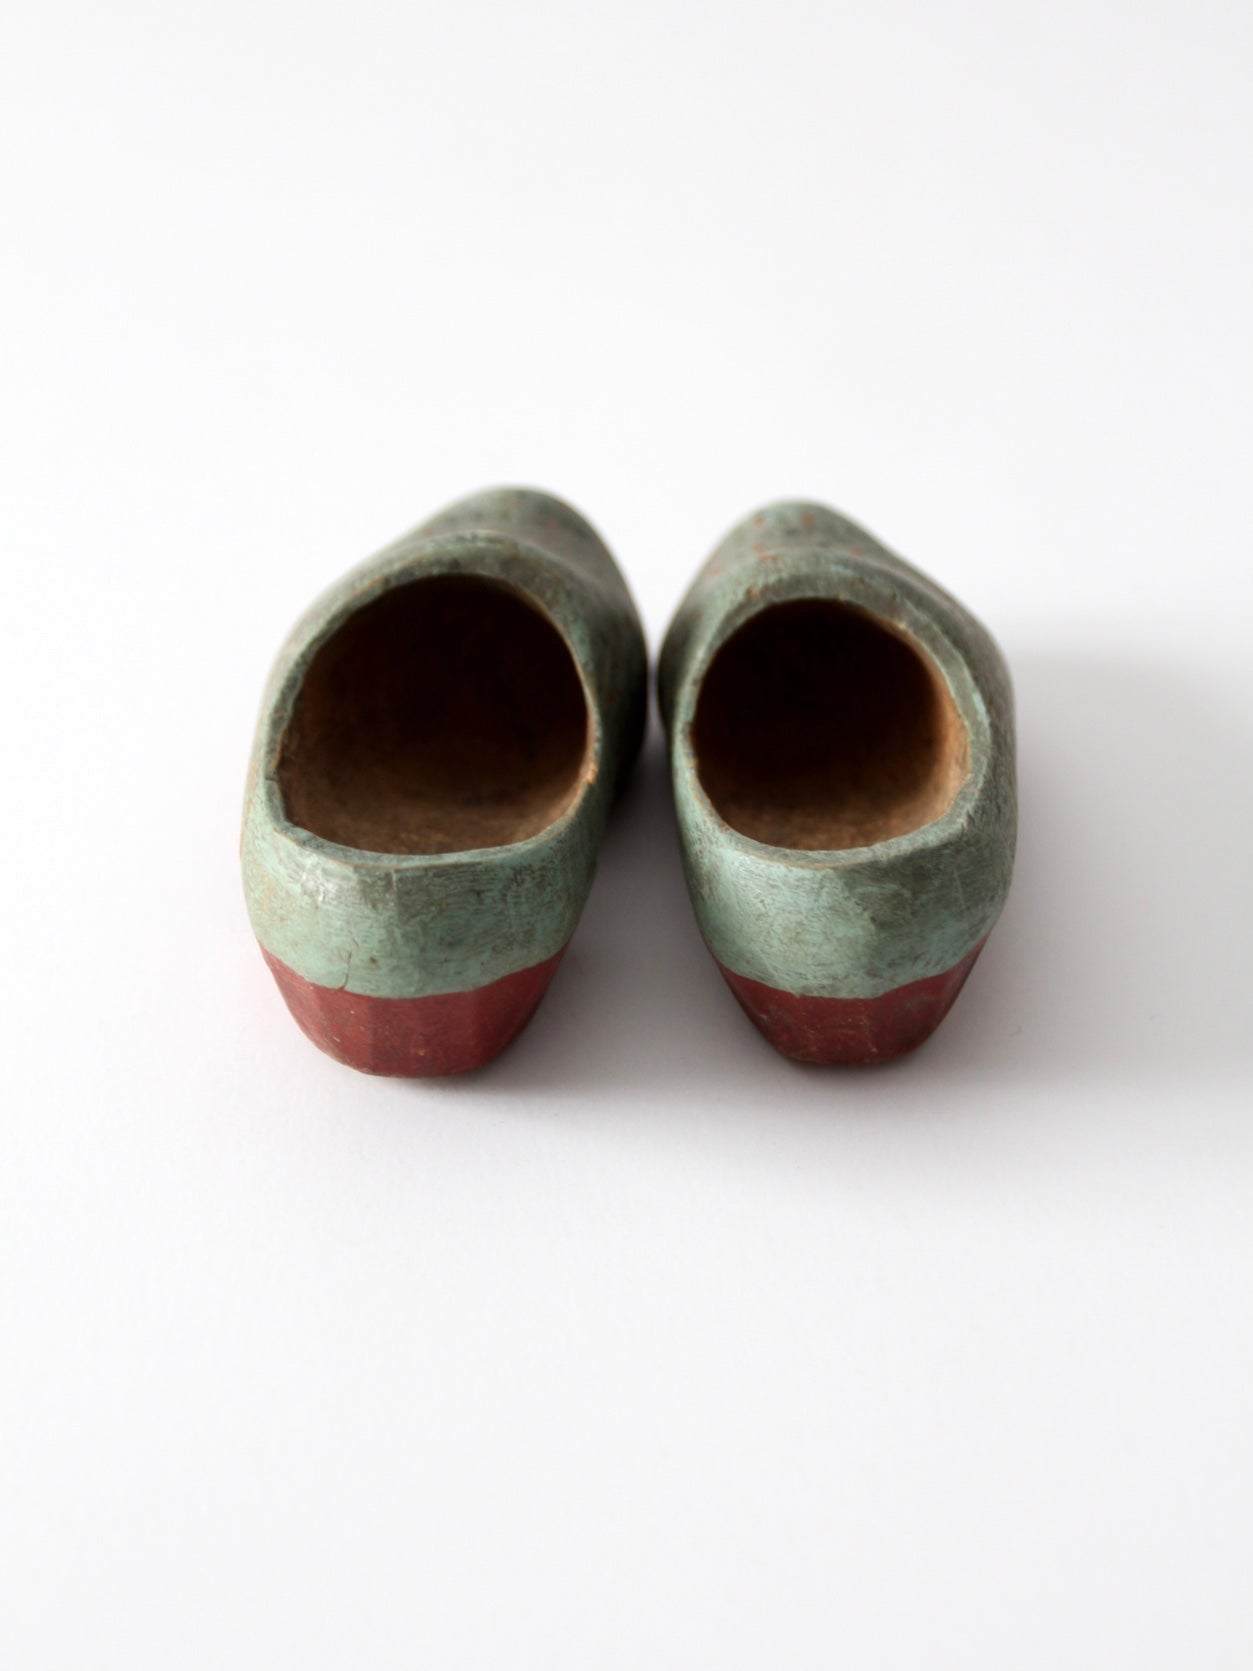 antique wood clog shoes